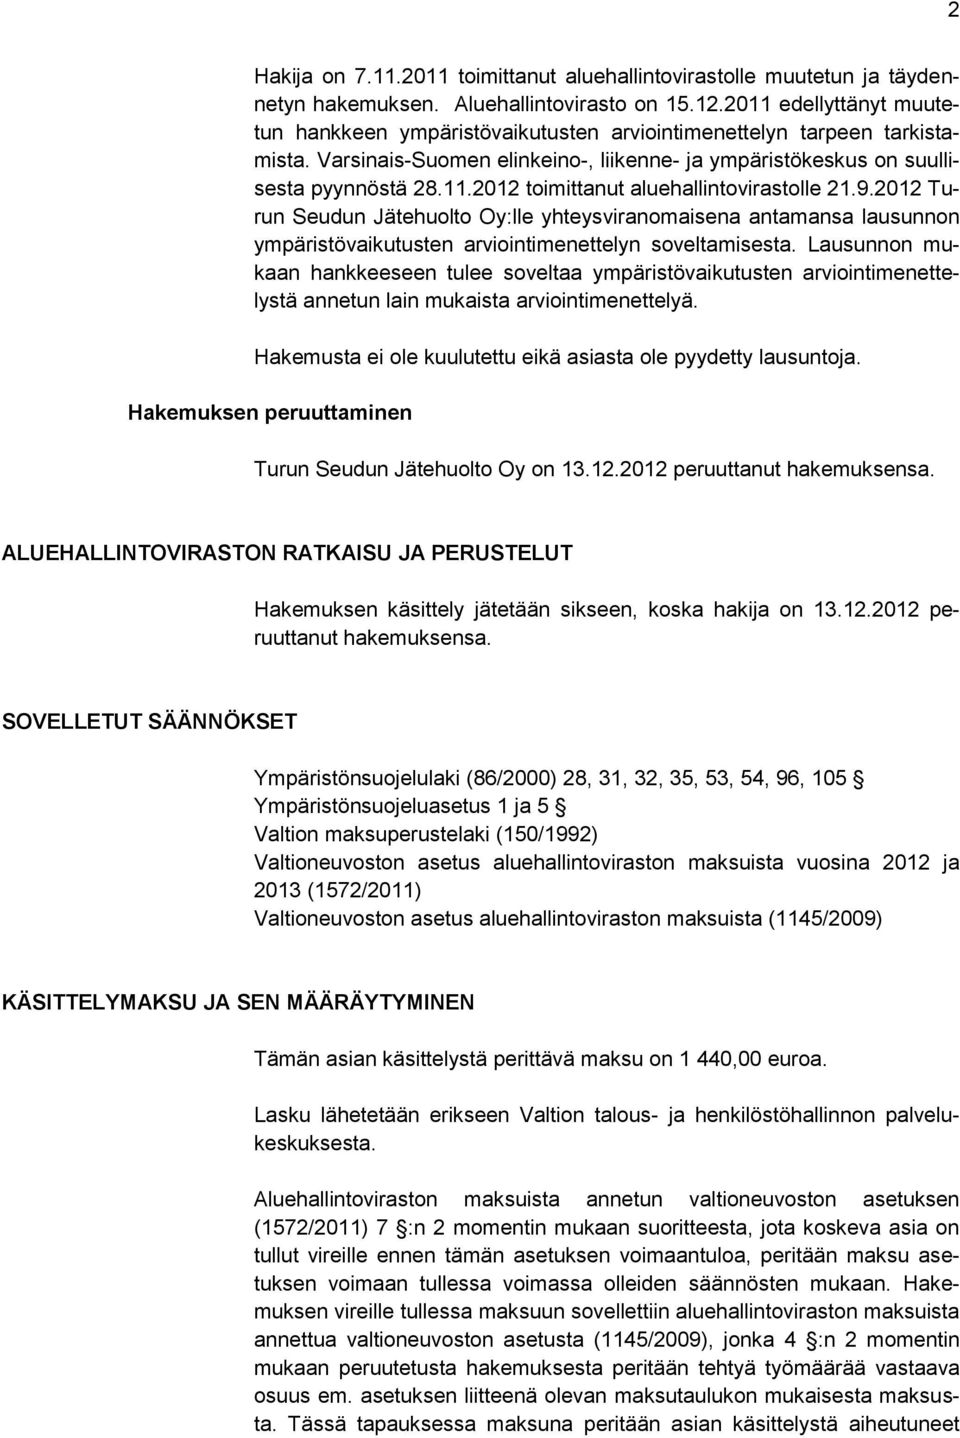 9.2012 Turun Seudun Jätehuolto Oy:lle yhteysviranomaisena antamansa lausunnon ympäristövaikutusten arviointimenettelyn soveltamisesta.